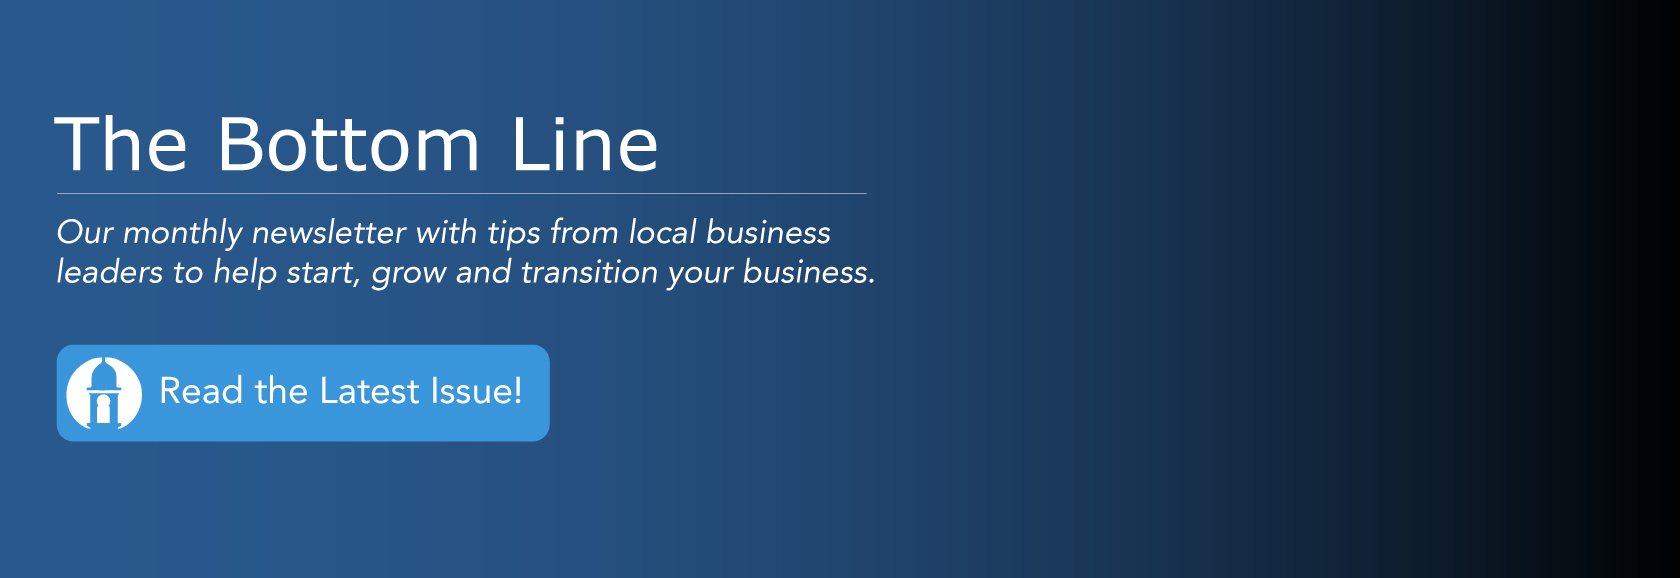 The Bottom Line business newsletter banner image